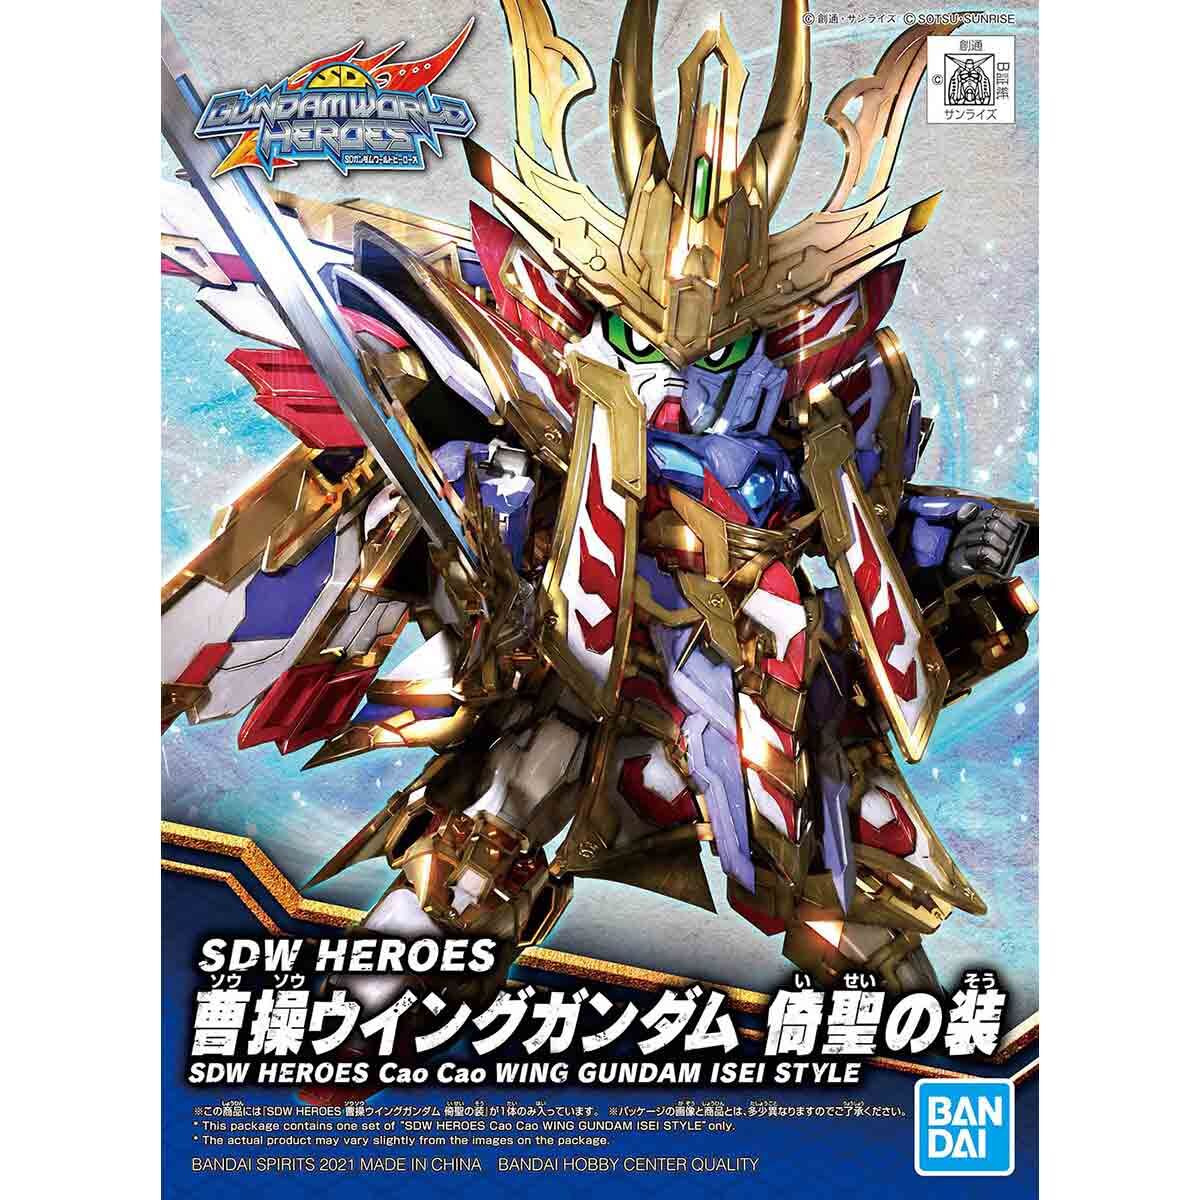 GUNDAM BAN2568791 #09 Cao Cao Wing Gundam Isei Style "SD Gundam World Heroes", Bandai Spirits Hobby SDW Heroes